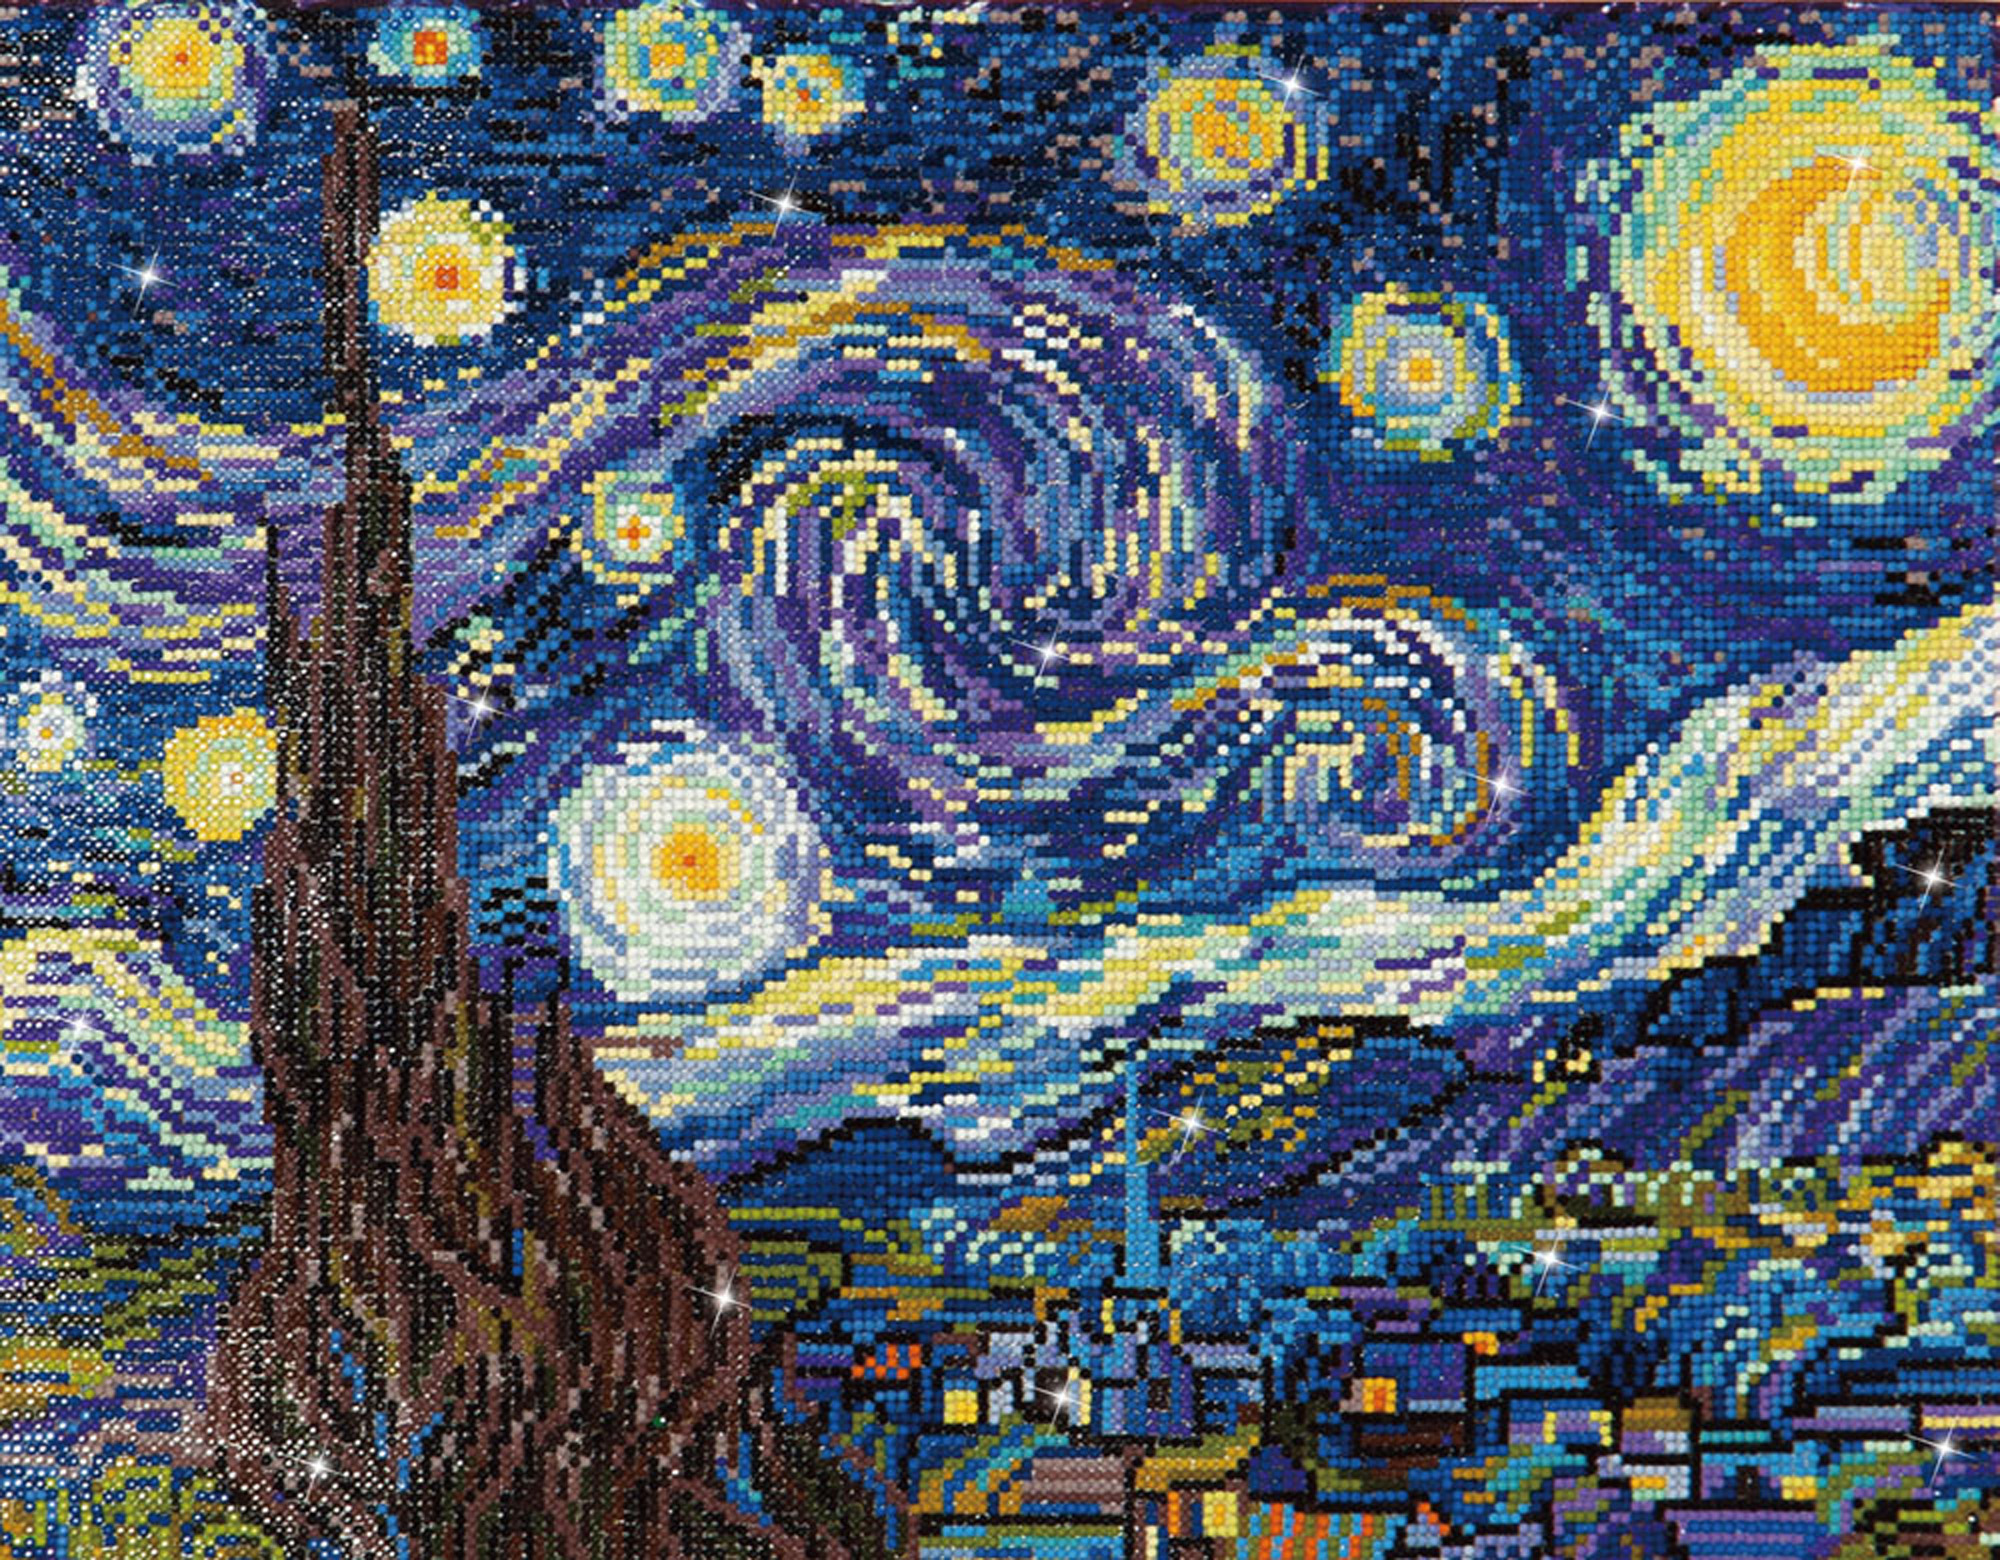 Diamond Dotz Starry Night (Van Gogh) Diamond Facet Art Kit